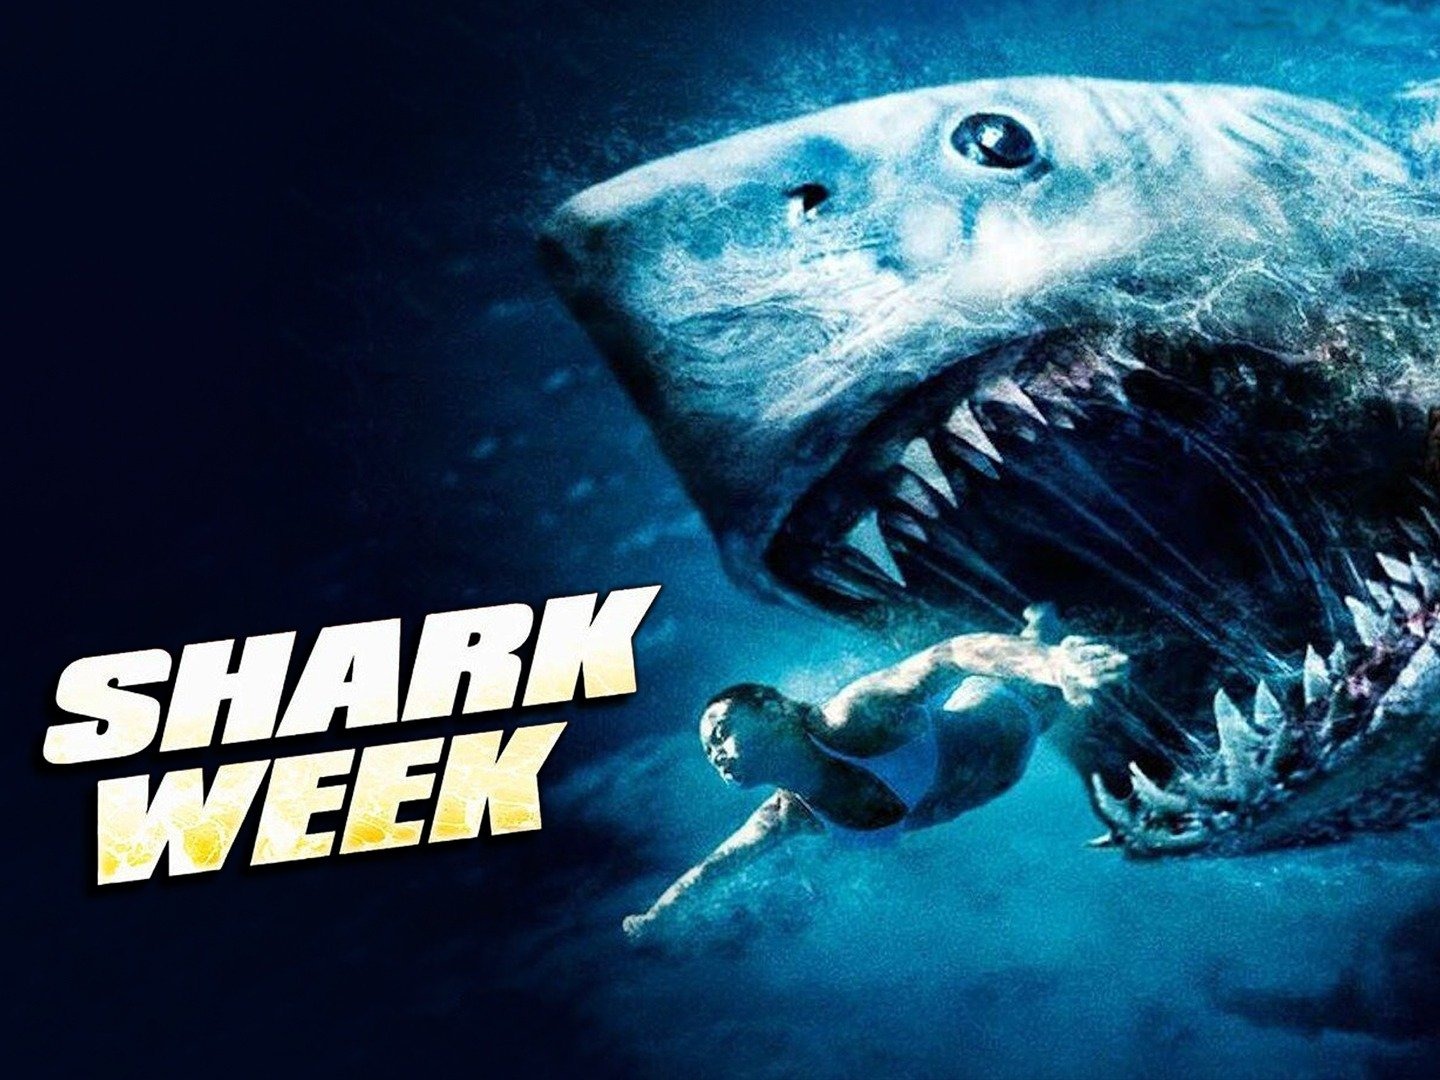 SHARK WEEK 2012 drive in movie channel